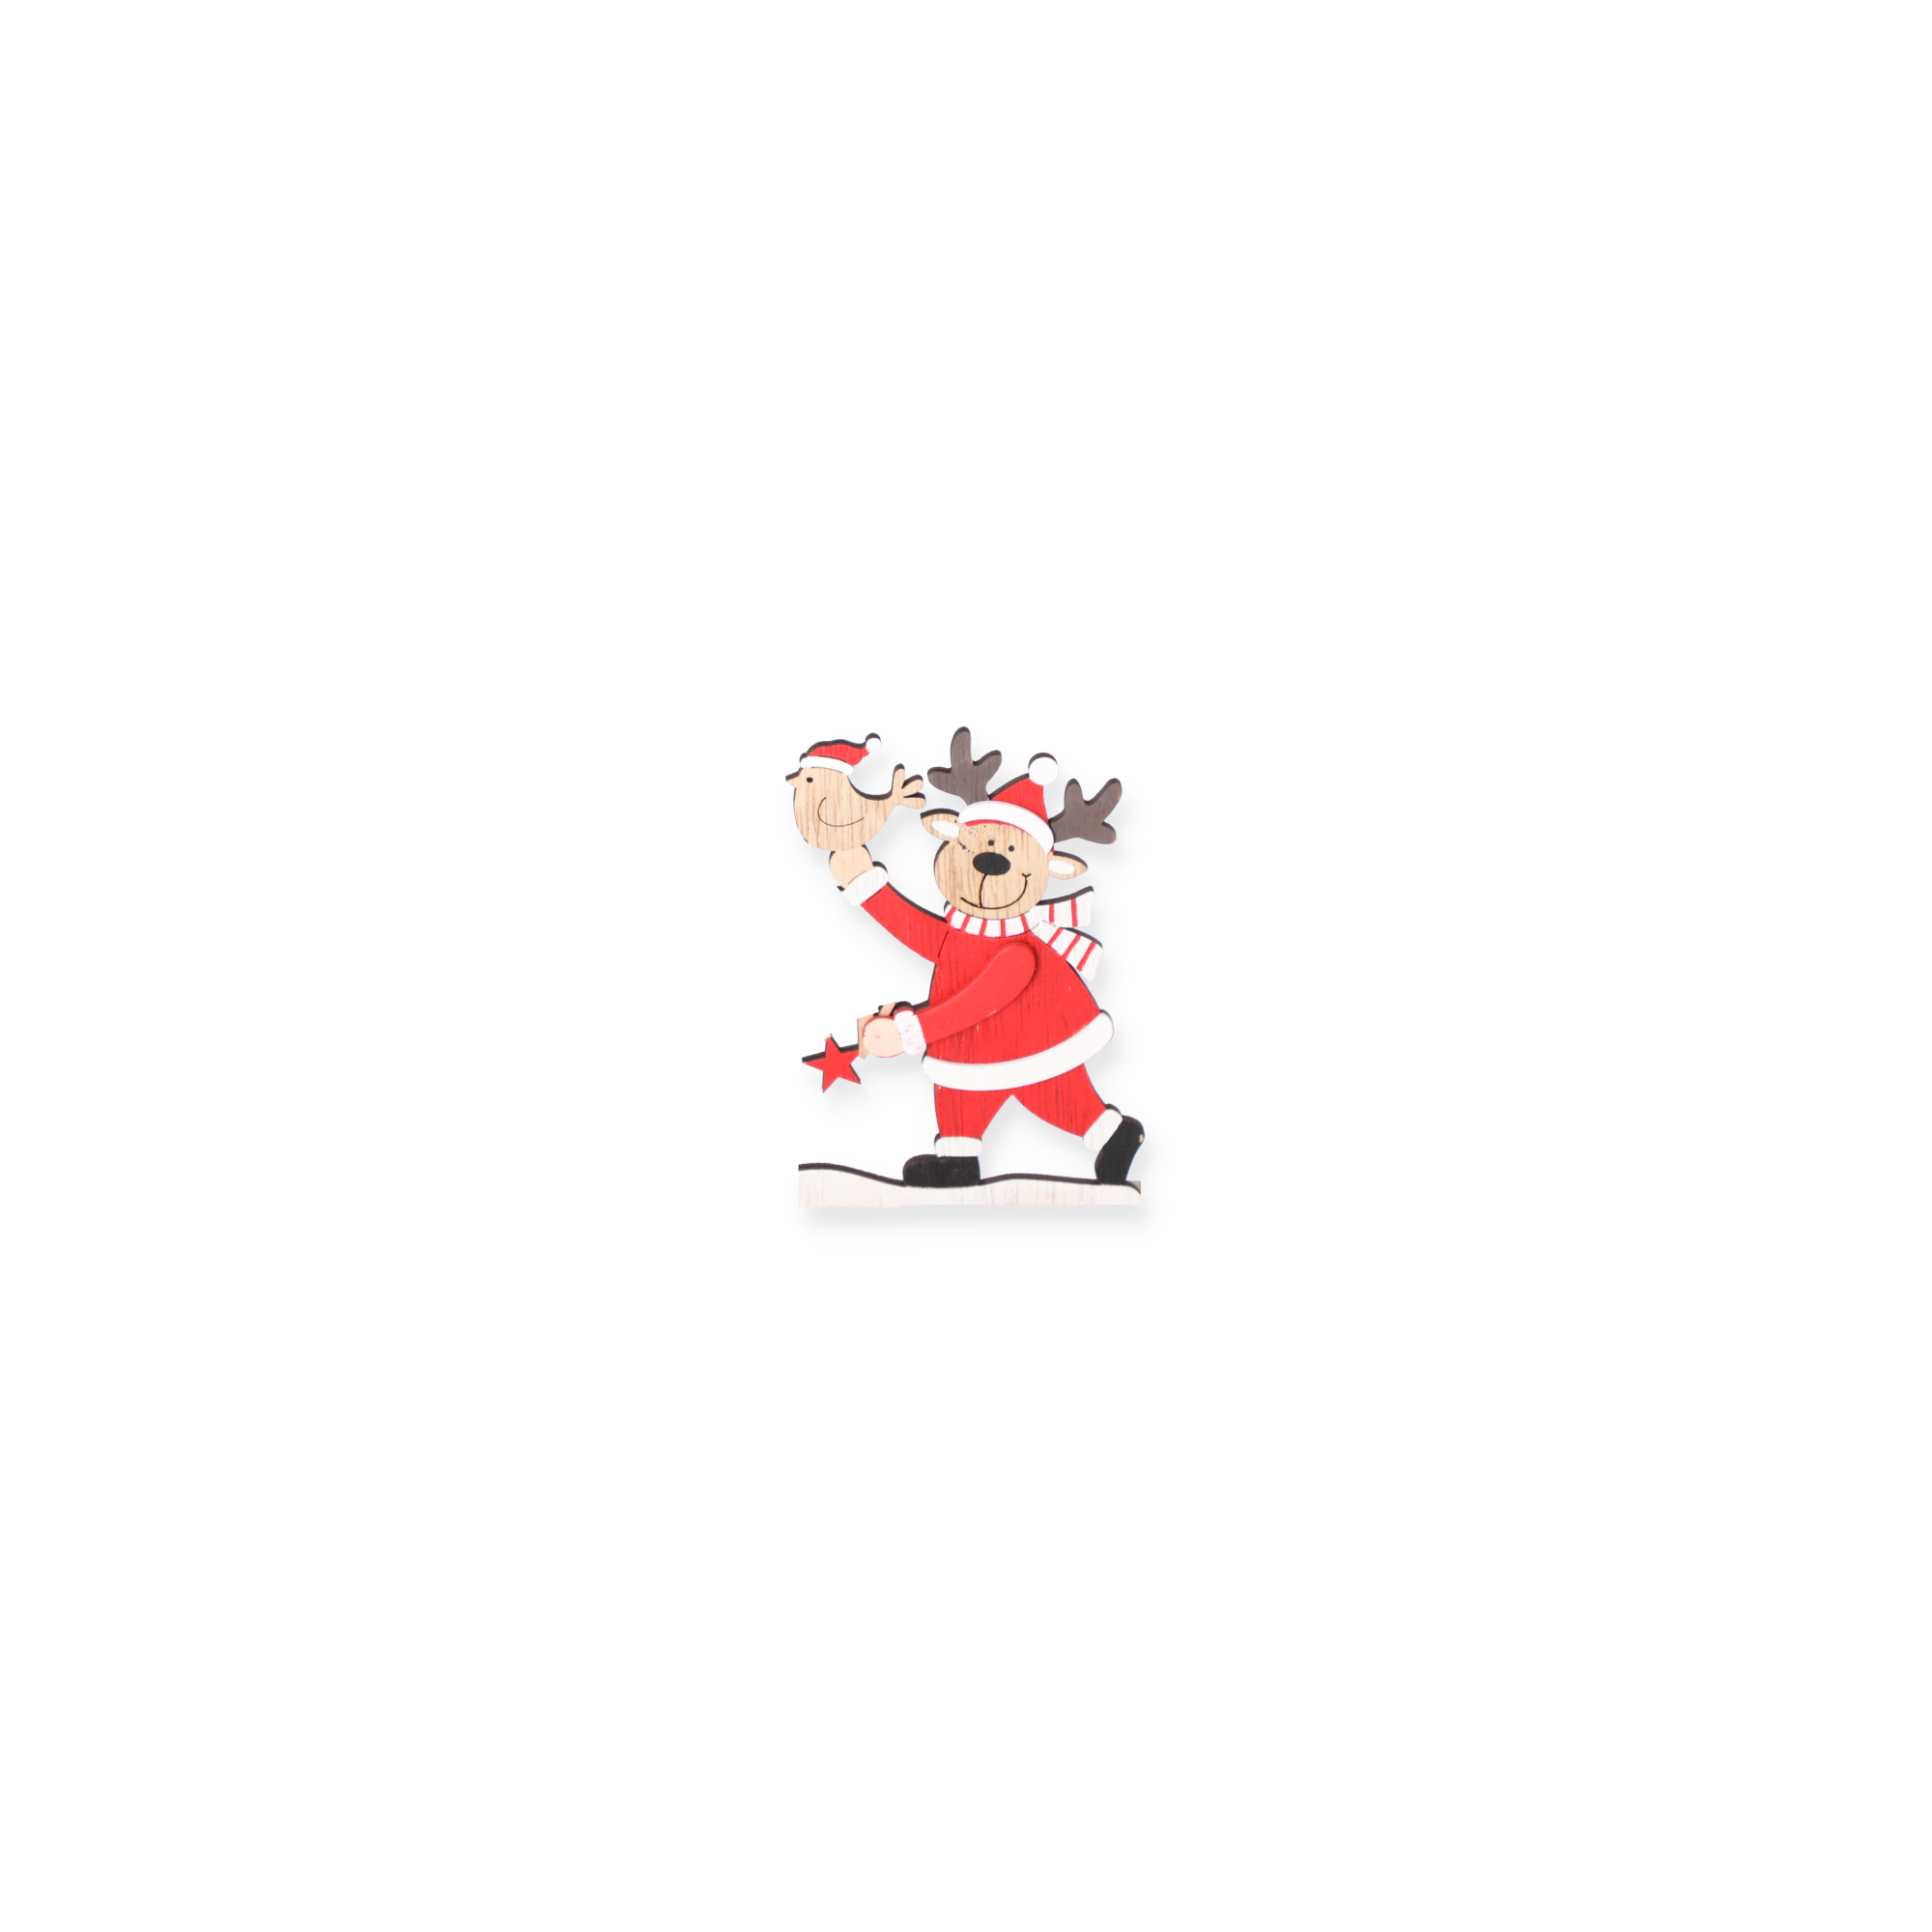 Deko-Schriftzug 'Frohe Weihnachten' rot/braun 33 x 14 cm + product picture